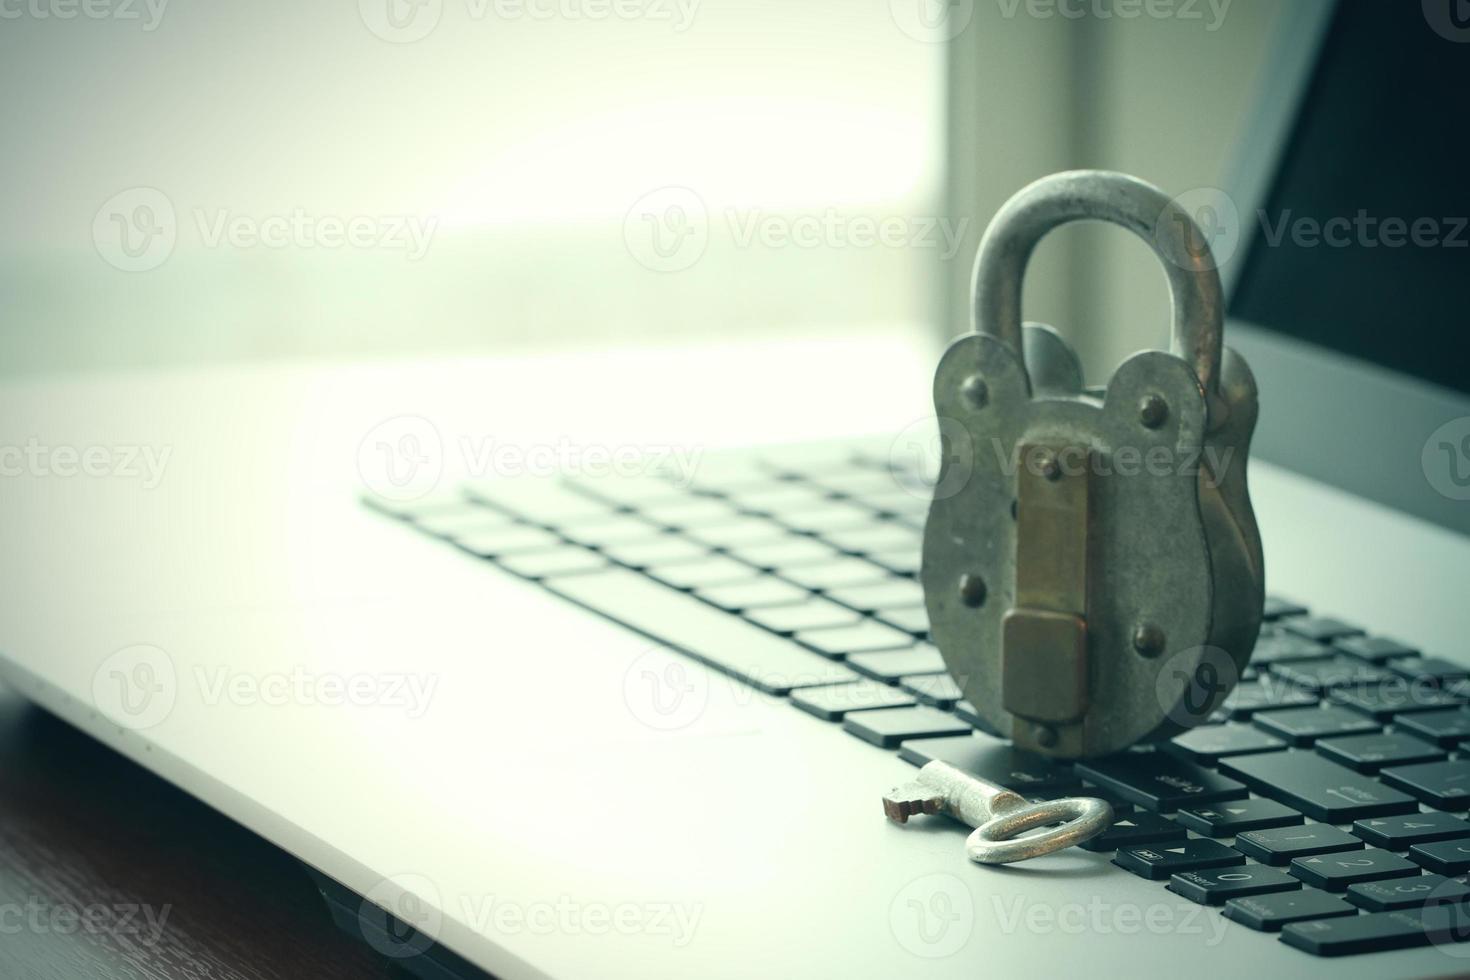 internetbeveiligingsconcept-oud hangslot en sleutel op het toetsenbord van de laptopcomputer foto